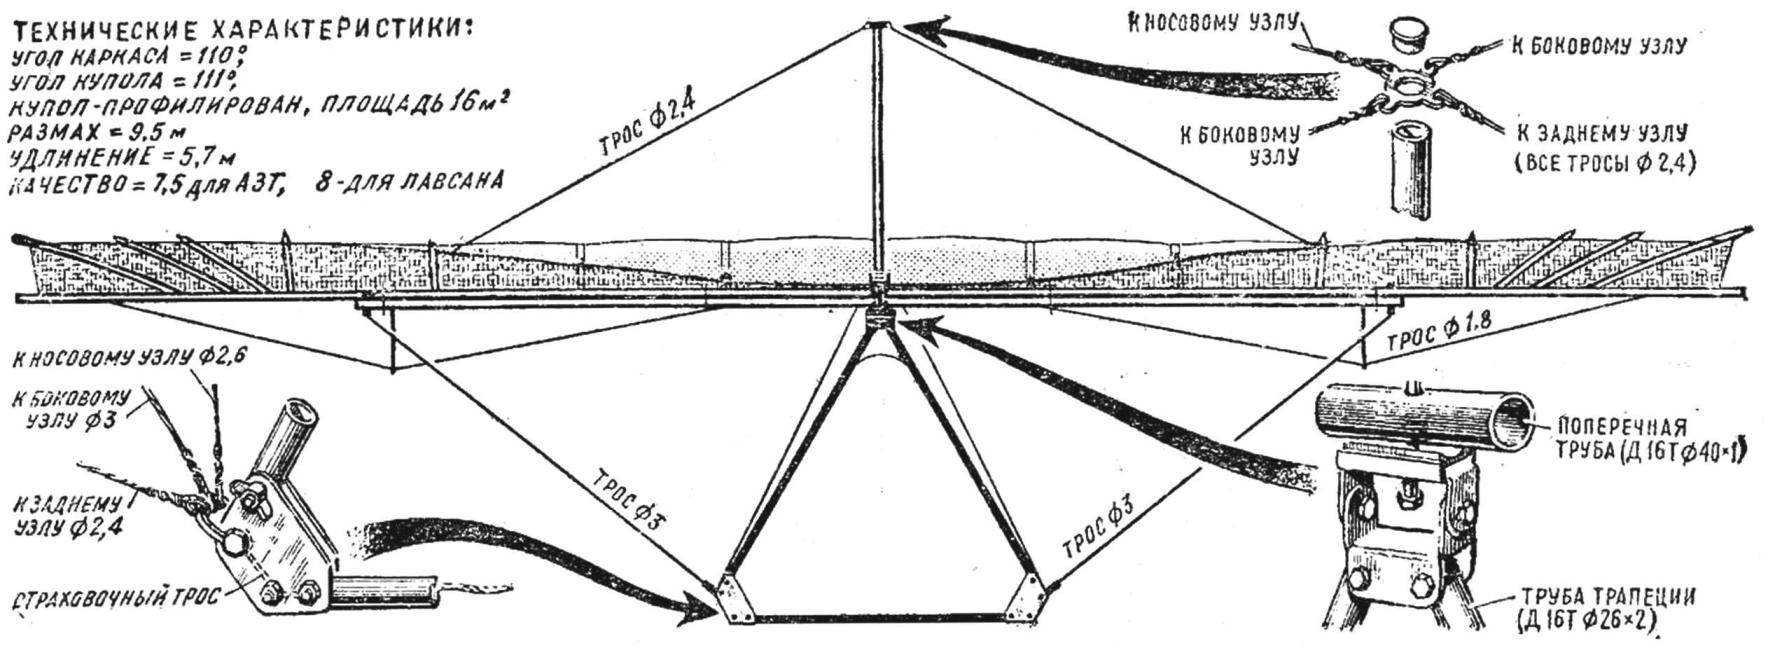 Рис. 2. Вид дельтаплана «Альбатрос» сзади и детали конструкции